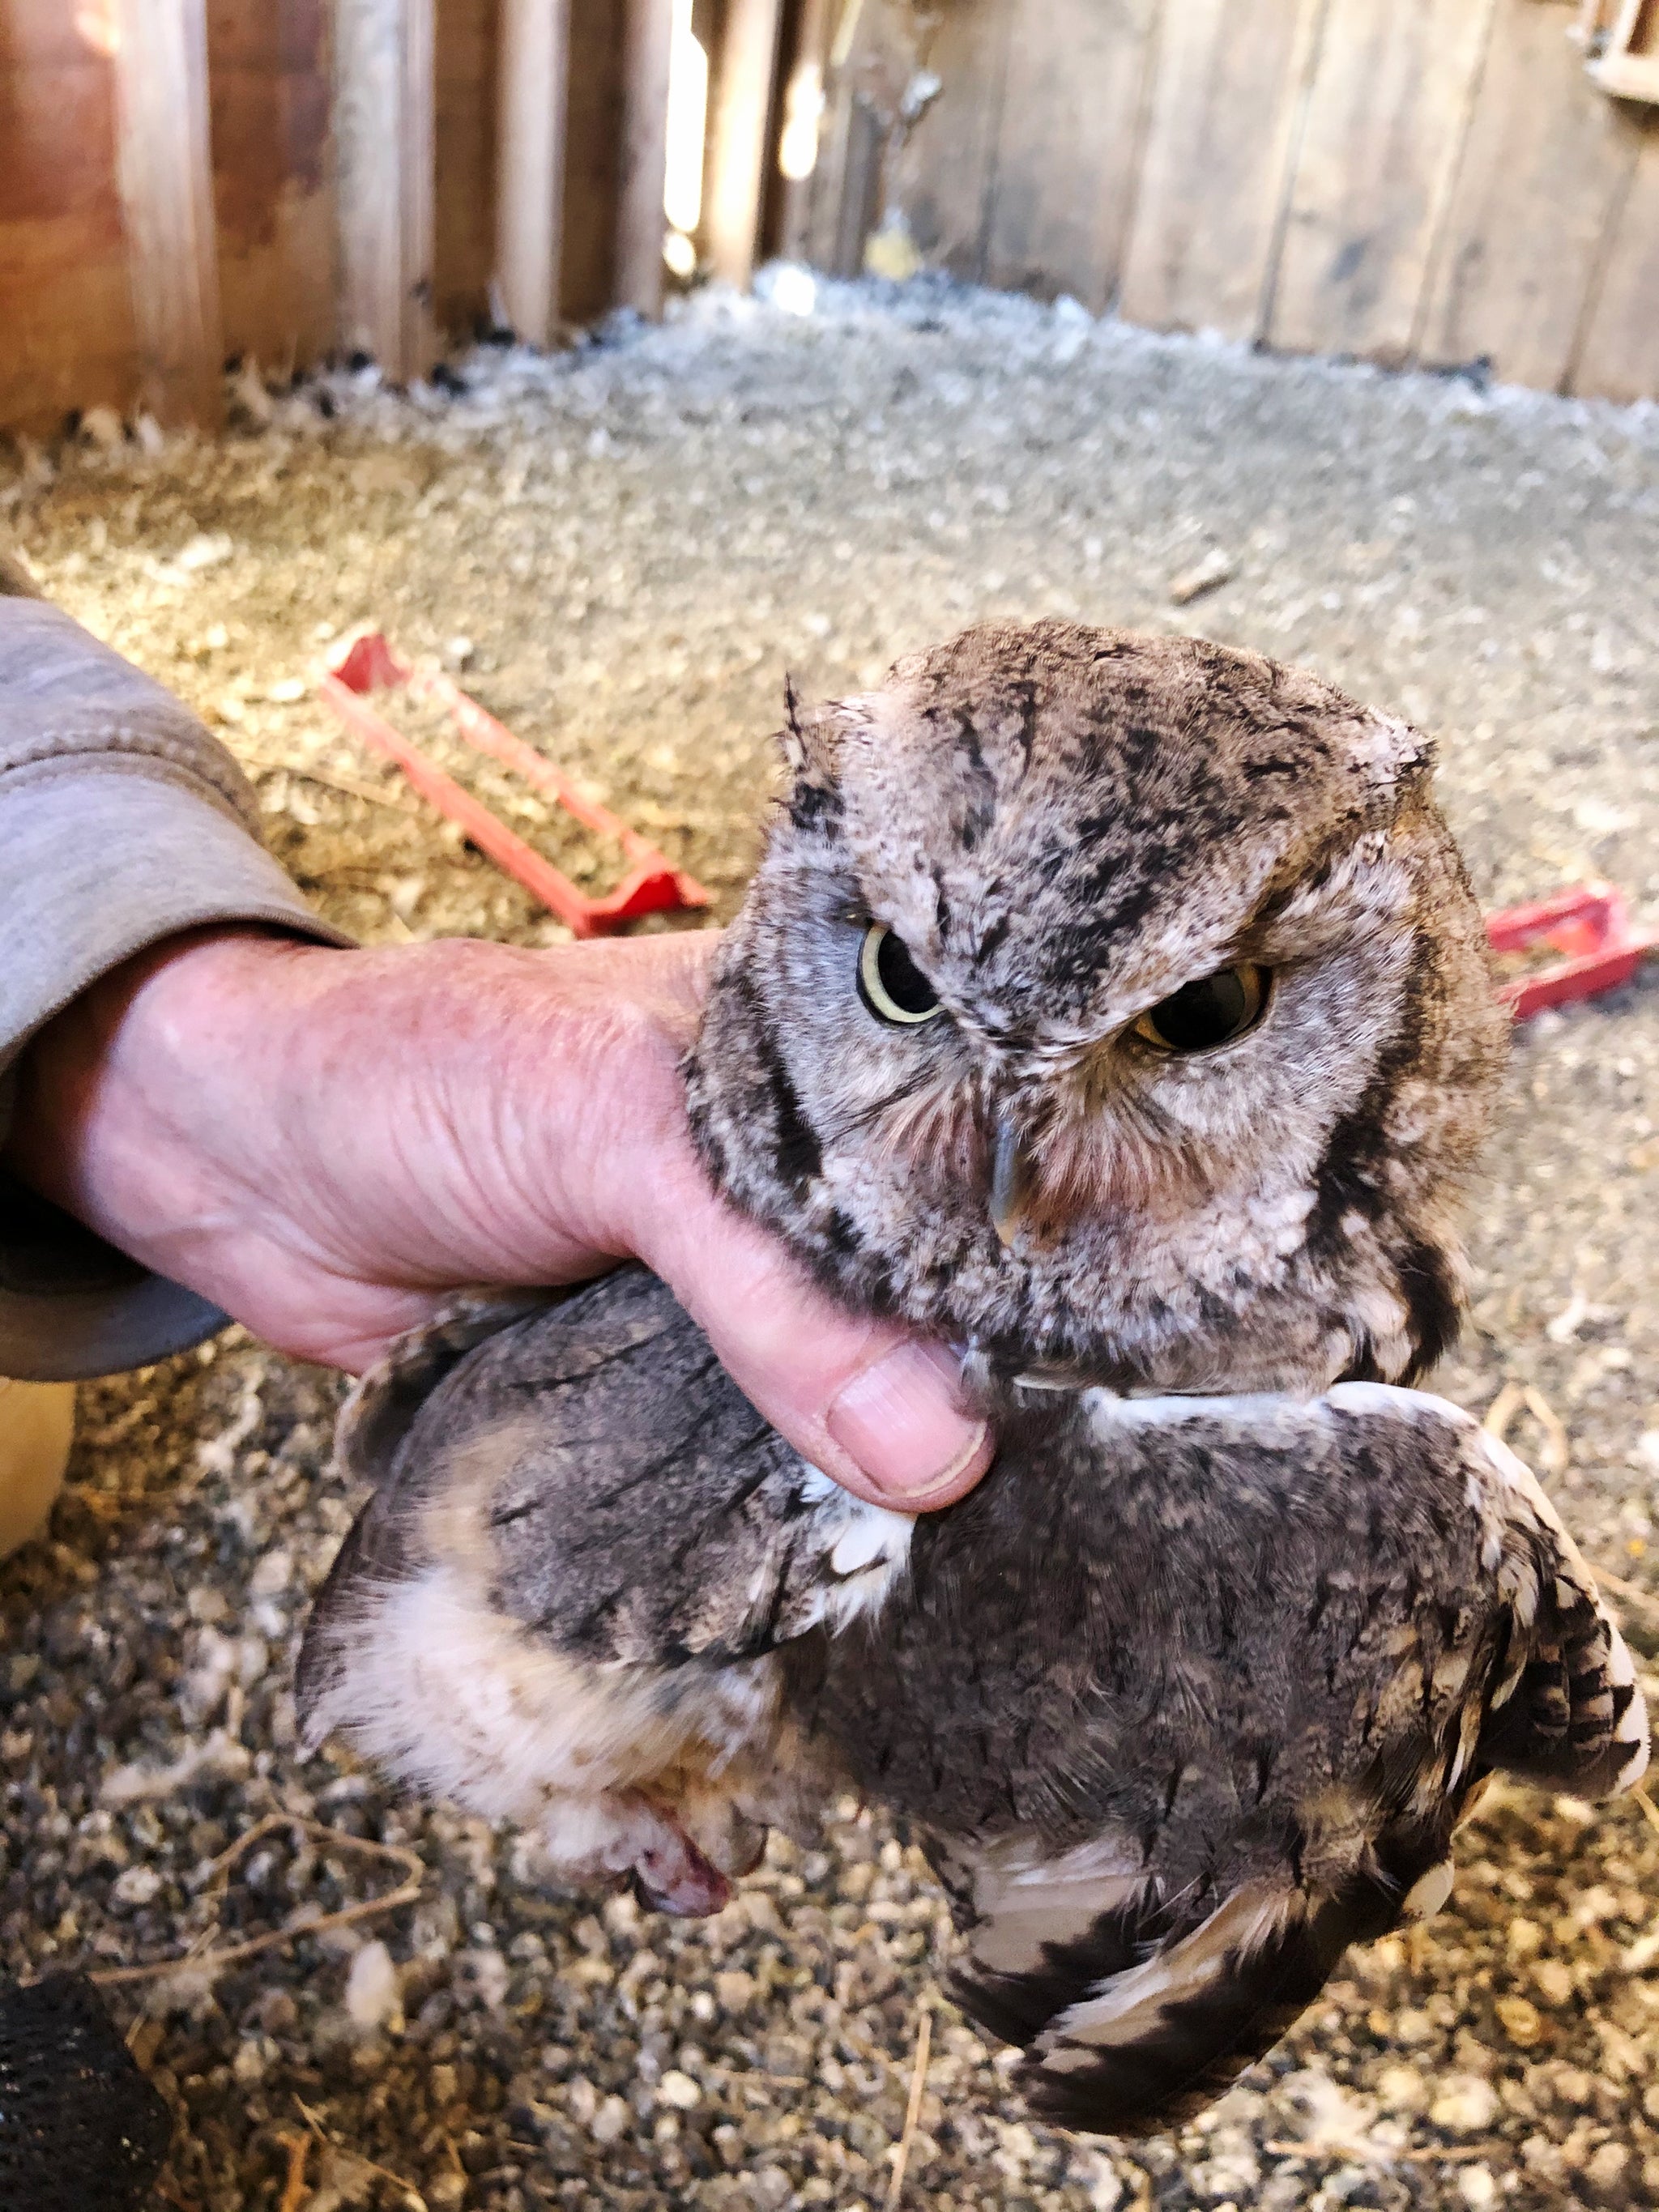 Grumpy looking Screech OWl